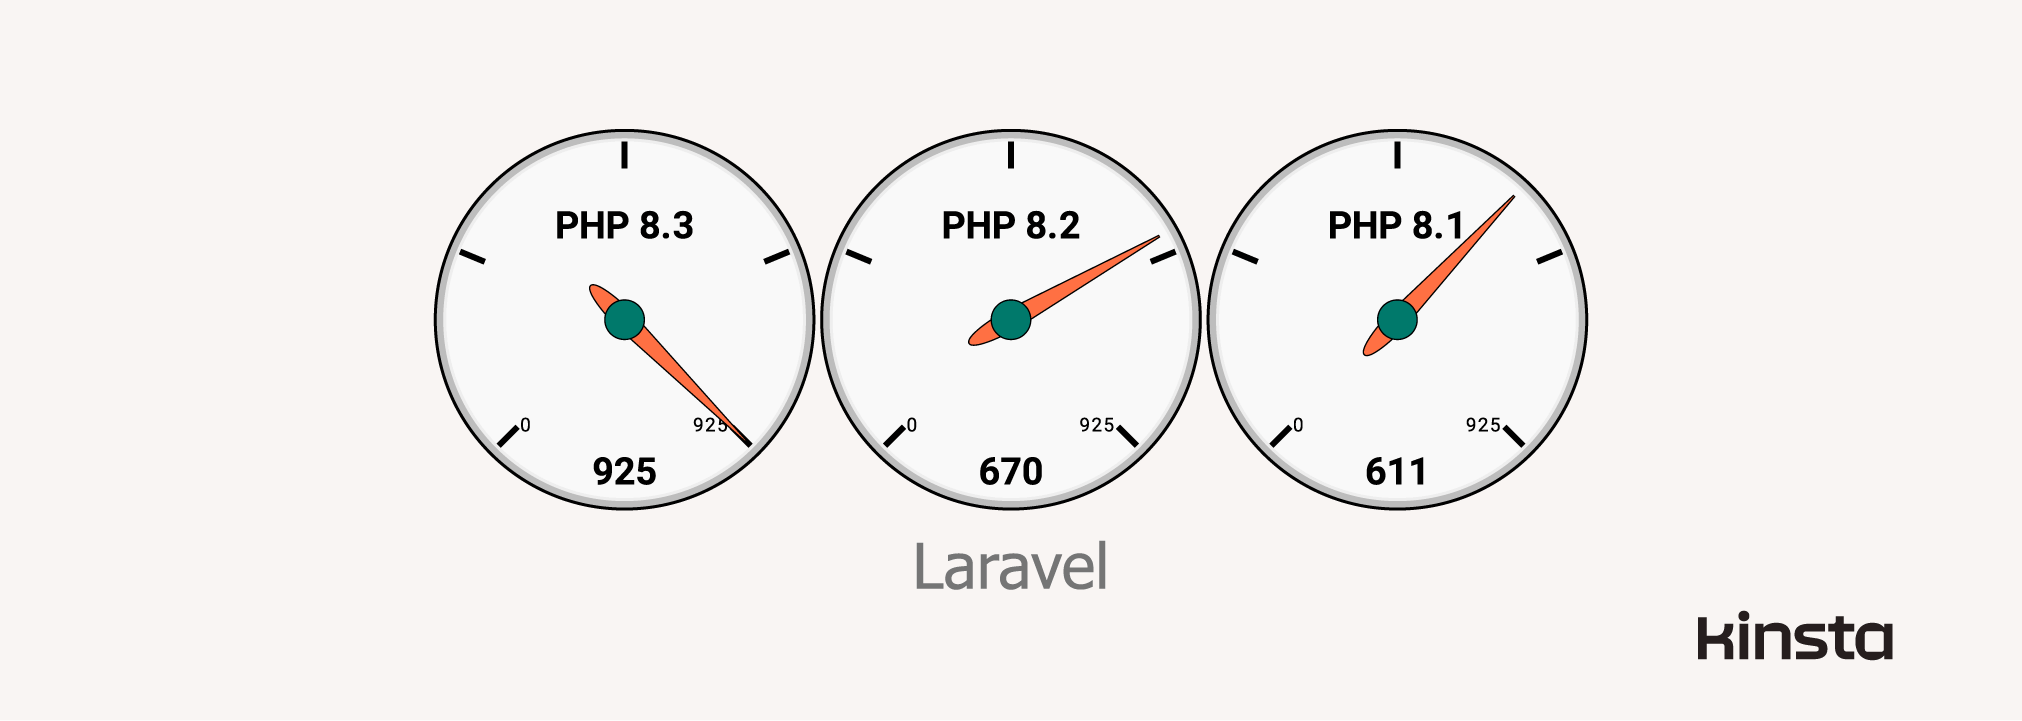 Laravel 10.16.1 Leistung mit PHP 8.1, 8.2 und 8.3 (in Anfragen/Sekunde)